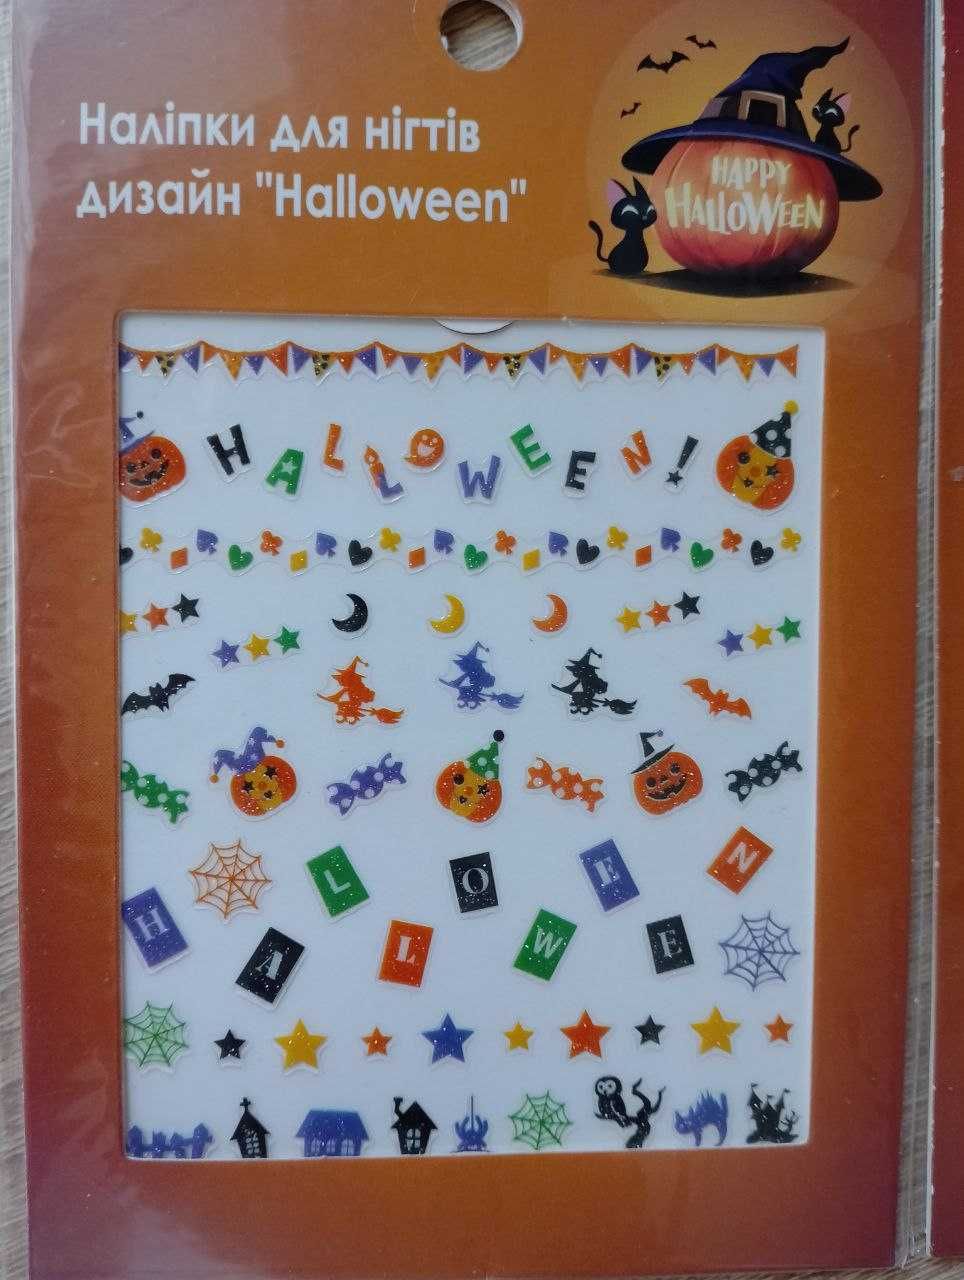 Стикеры наклейки дизайн для ногтей "halloween" Хэллоуин